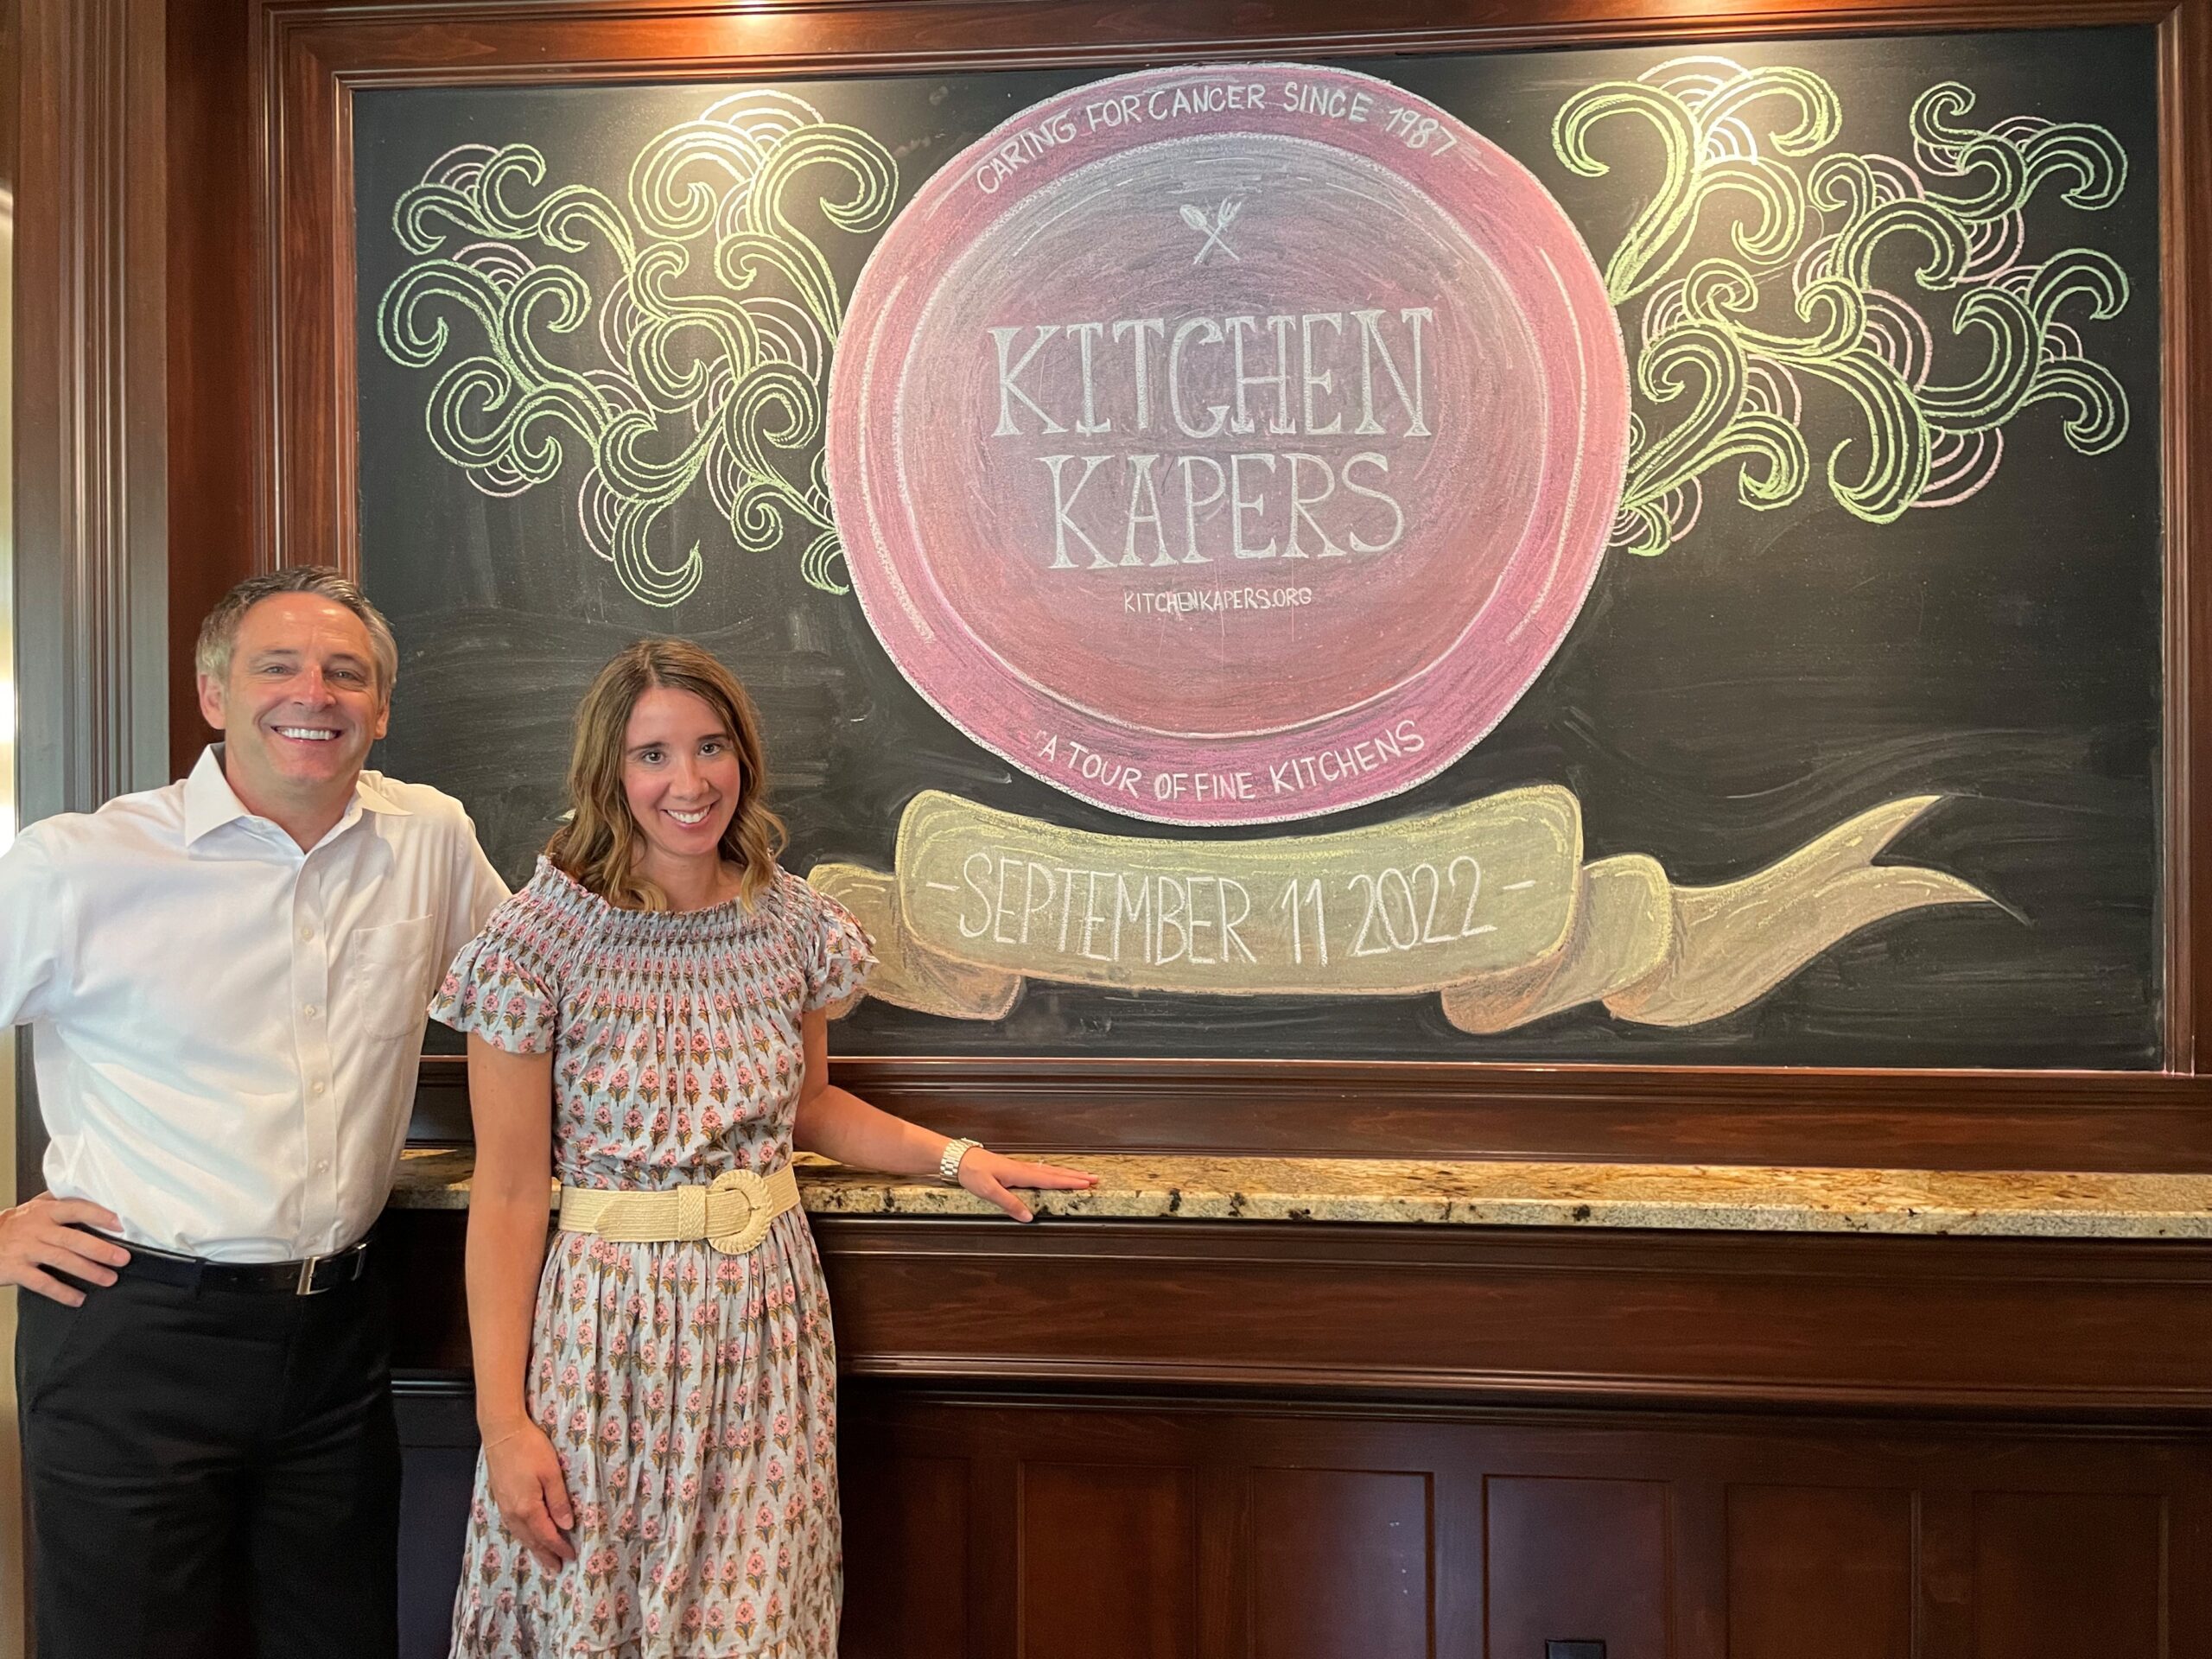 Kitchen Kapers sign on blackboard